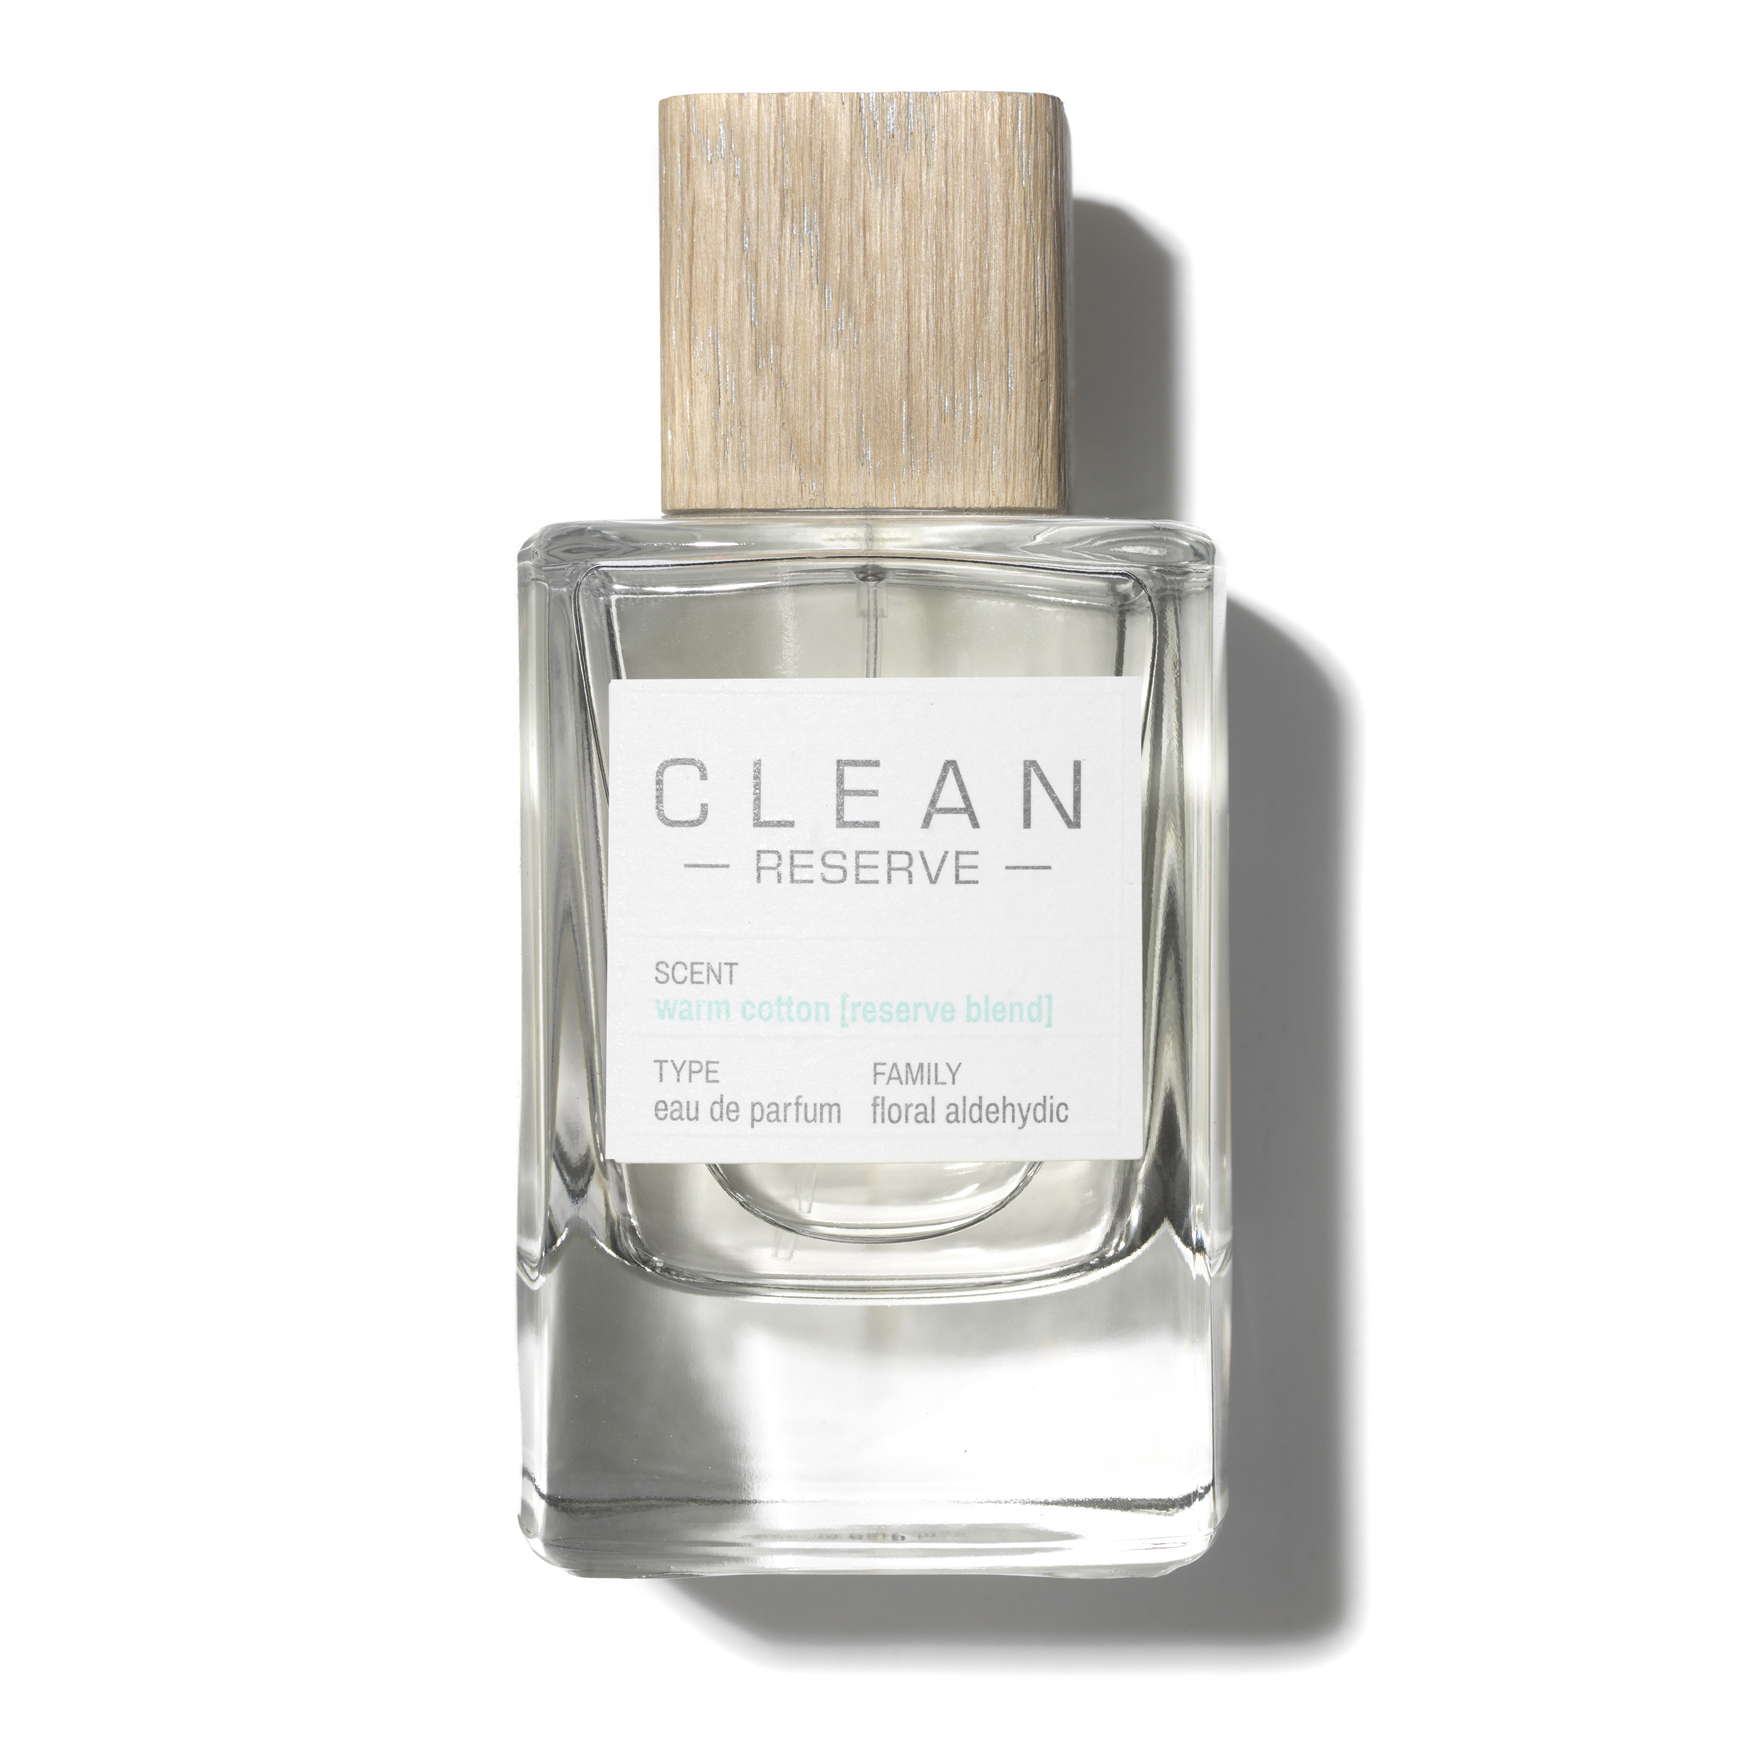 clean perfume warm cotton